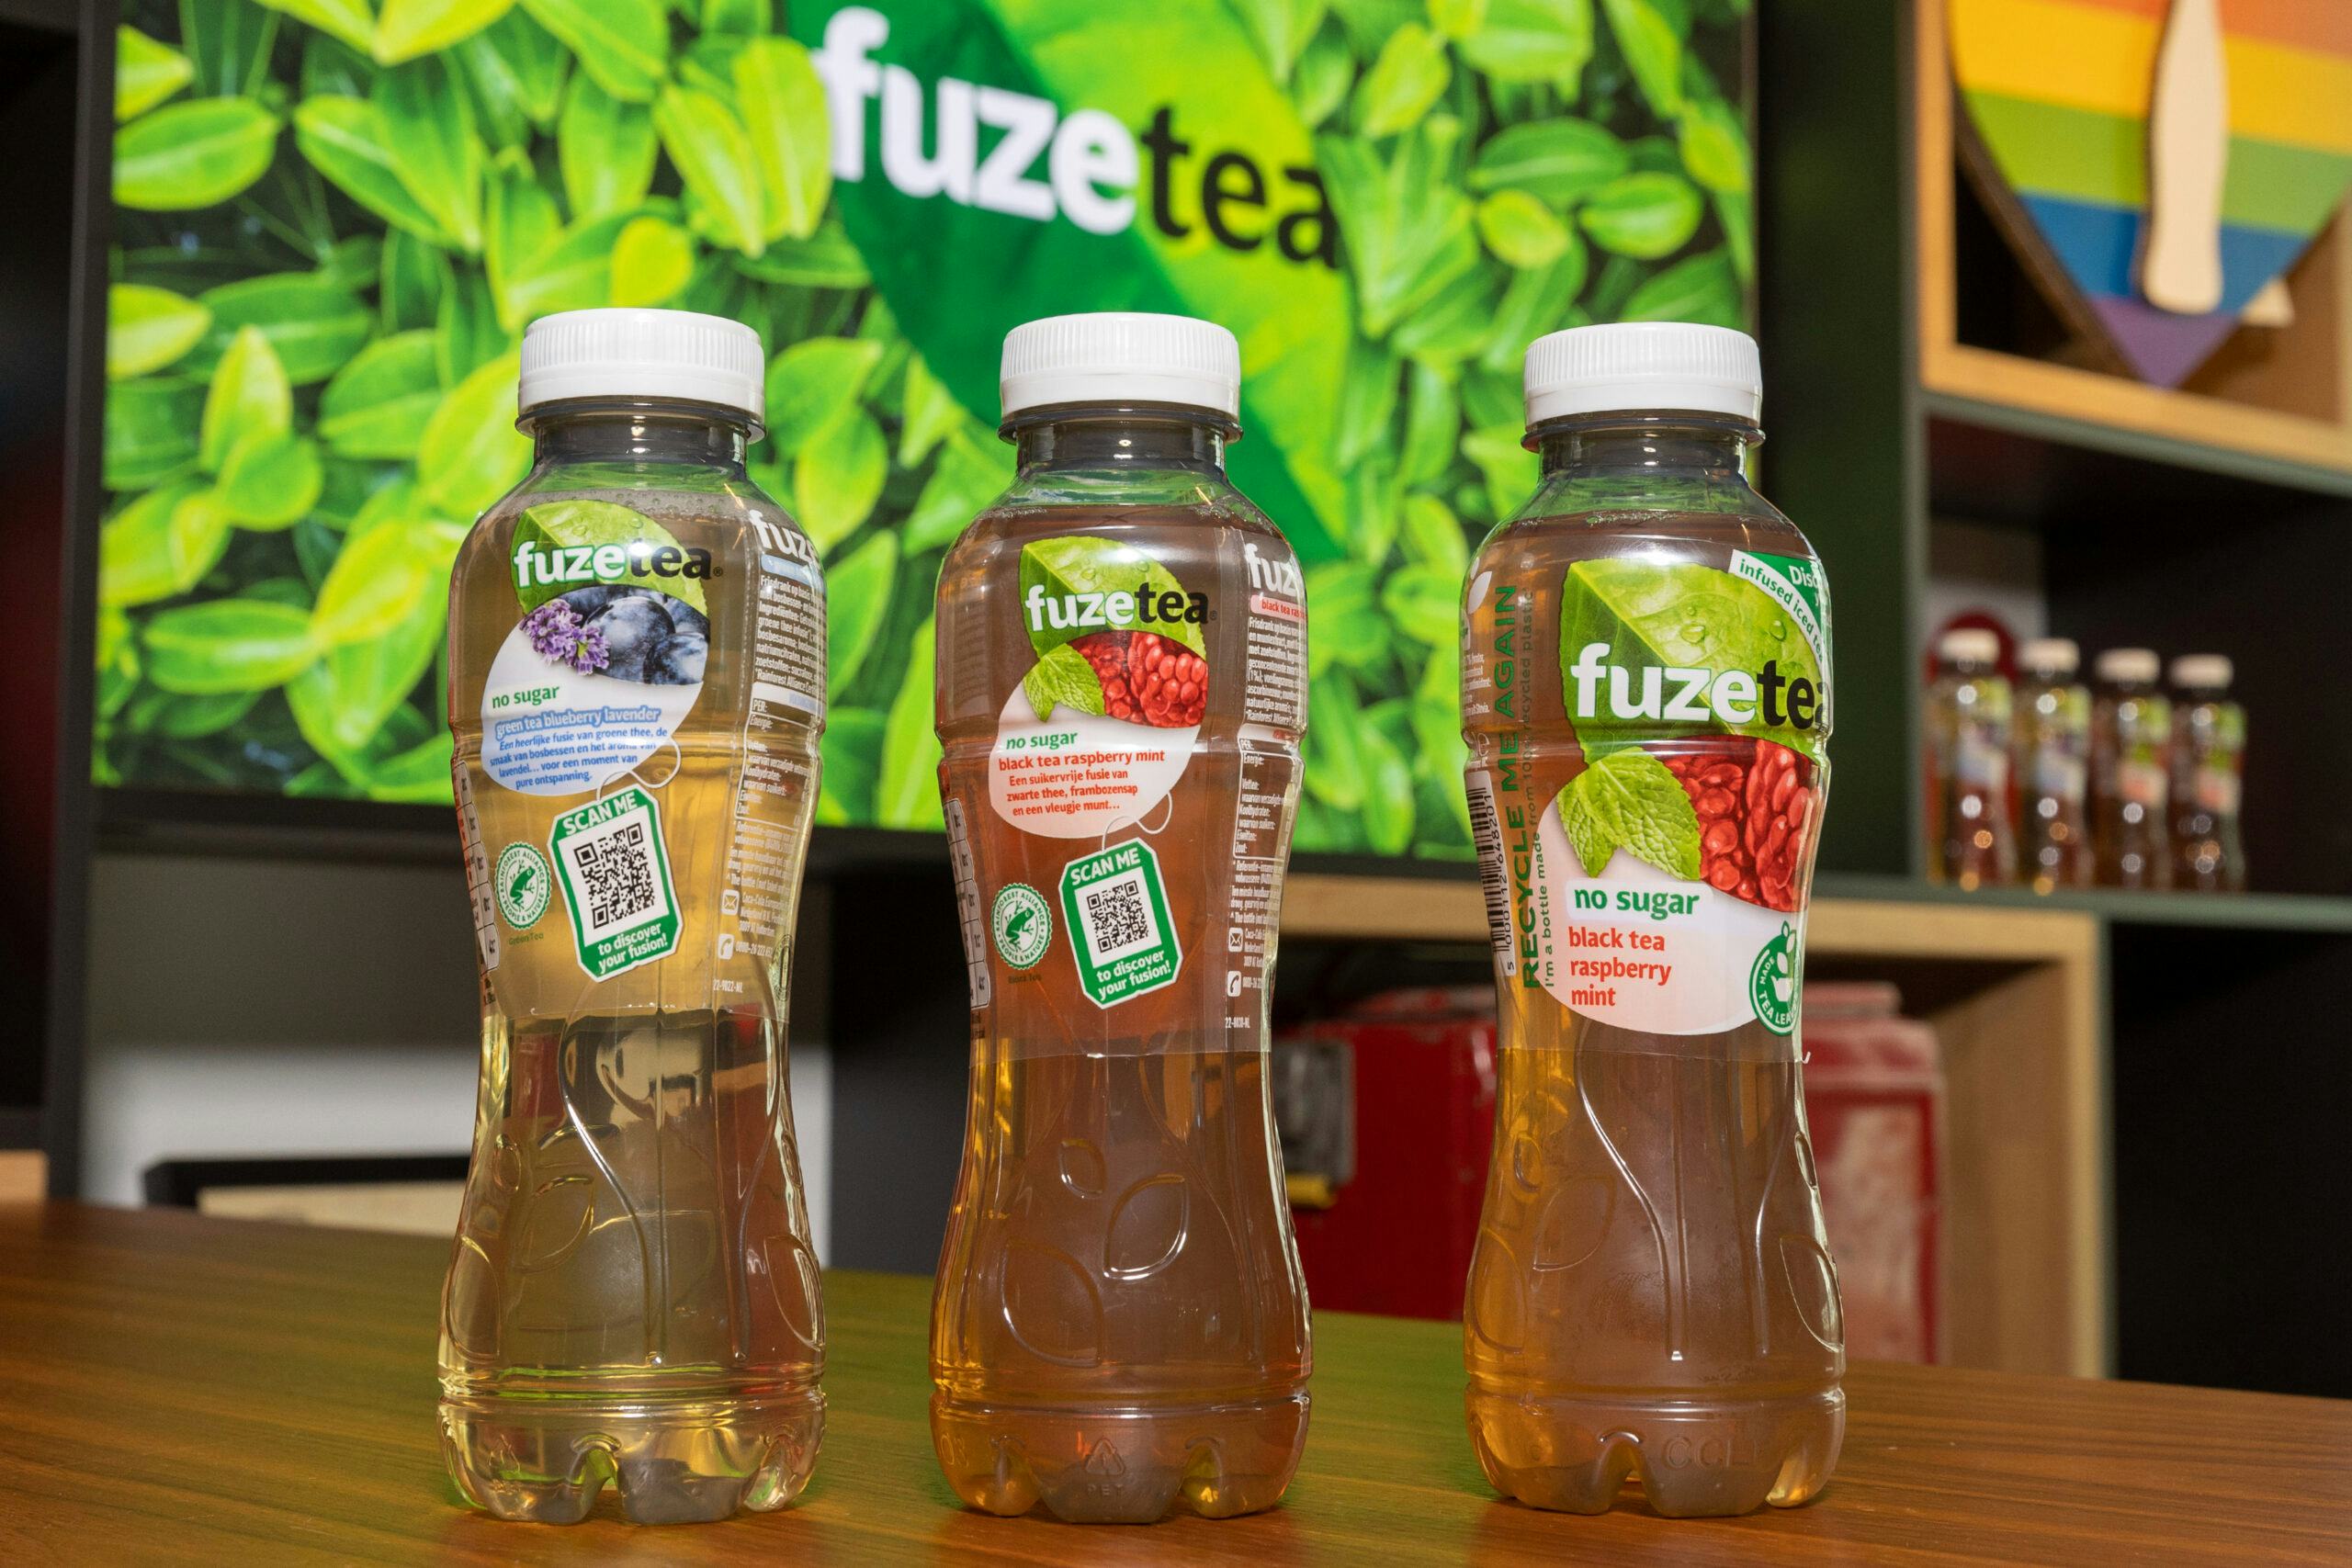 De campagne Made of Fusion focust op dat wat Fuze Tea uniek maakt. 